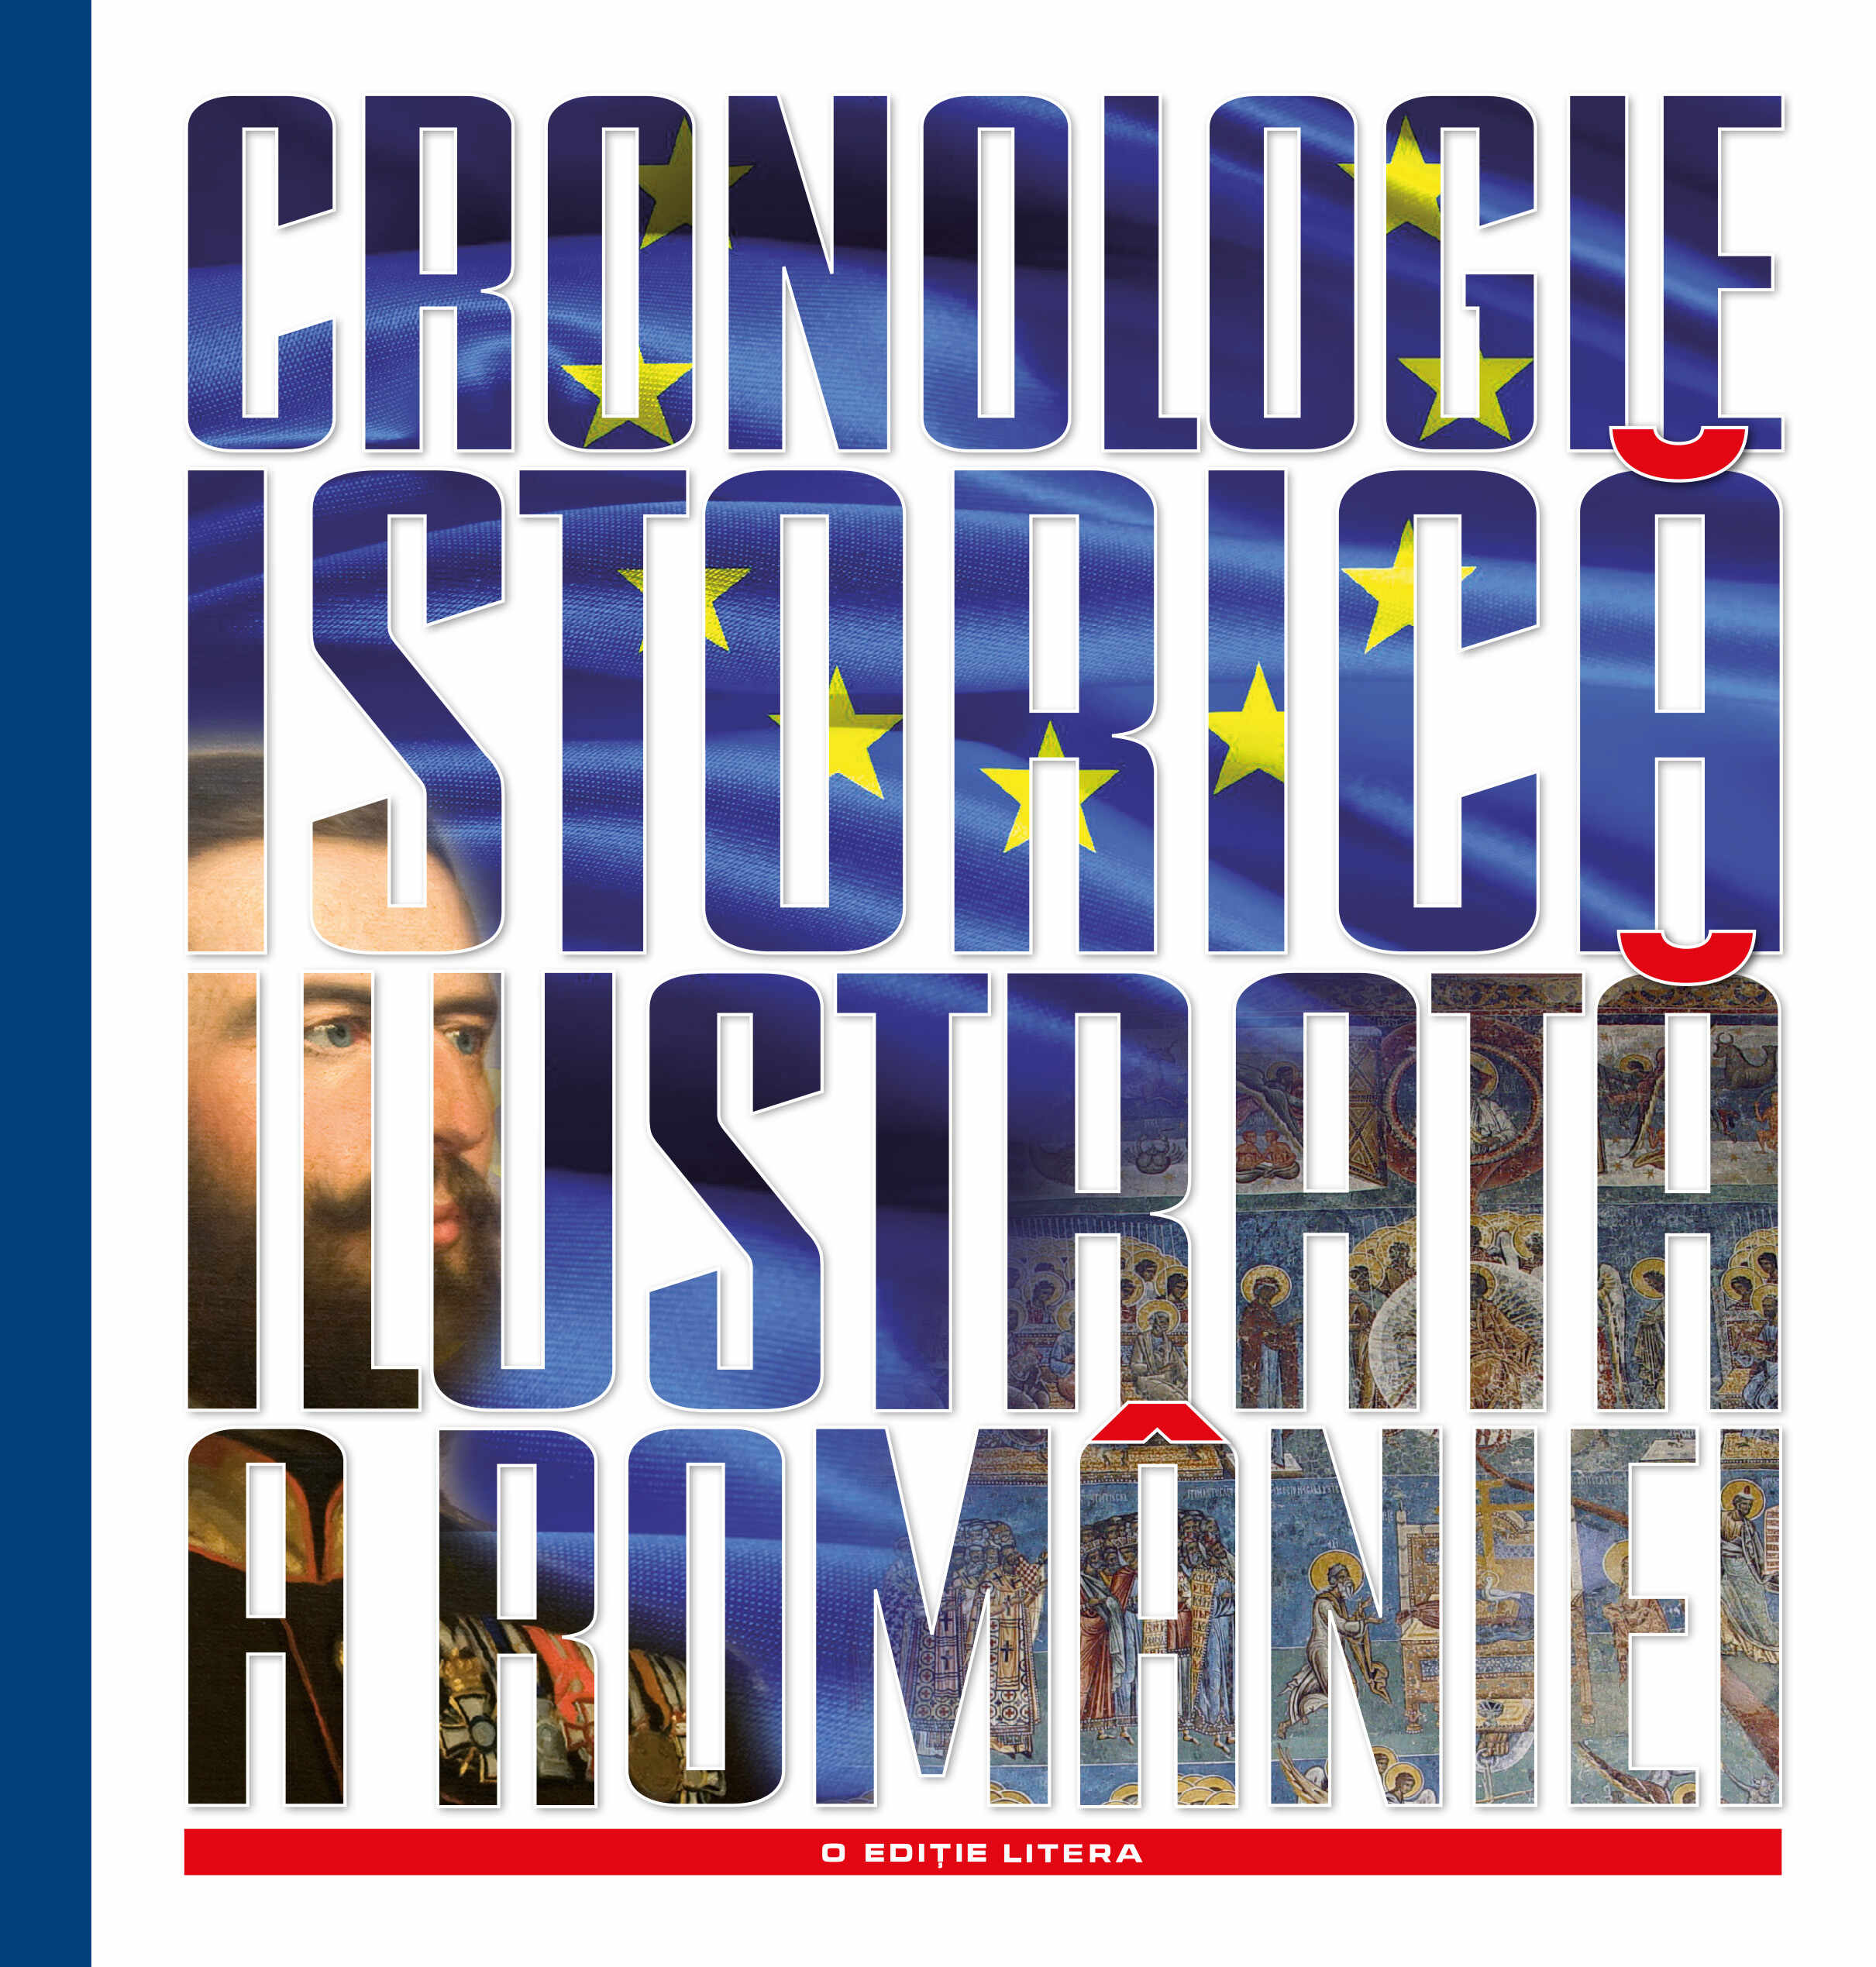 Cronologie istorică ilustrată a României